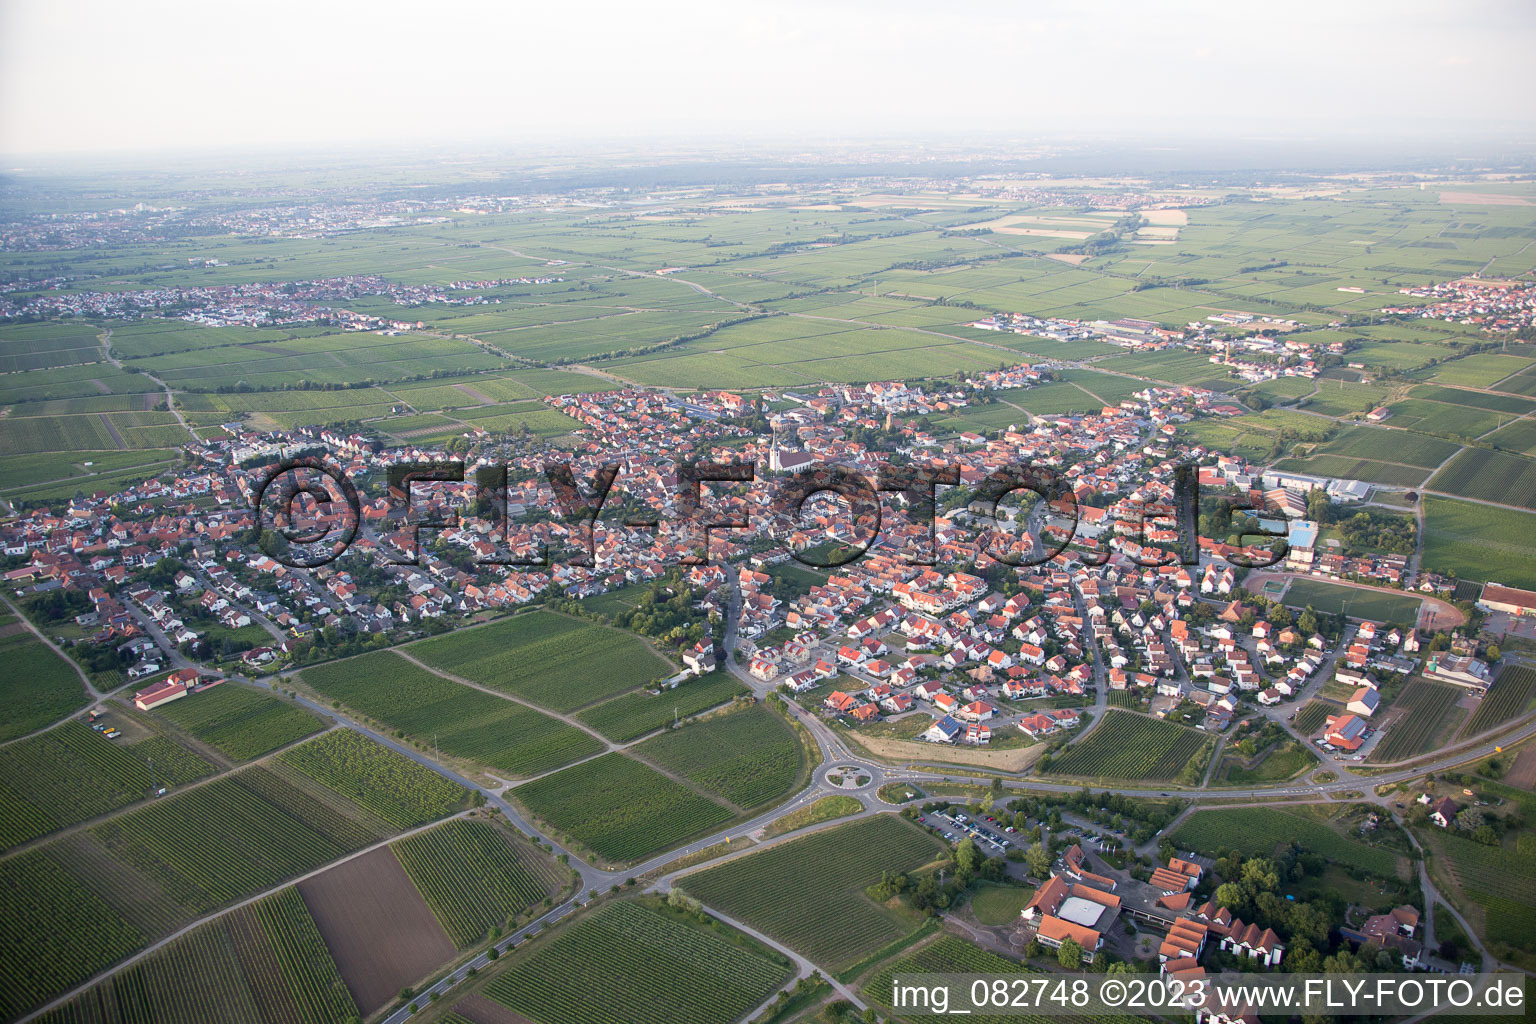 Vue aérienne de Maikammer dans le département Rhénanie-Palatinat, Allemagne